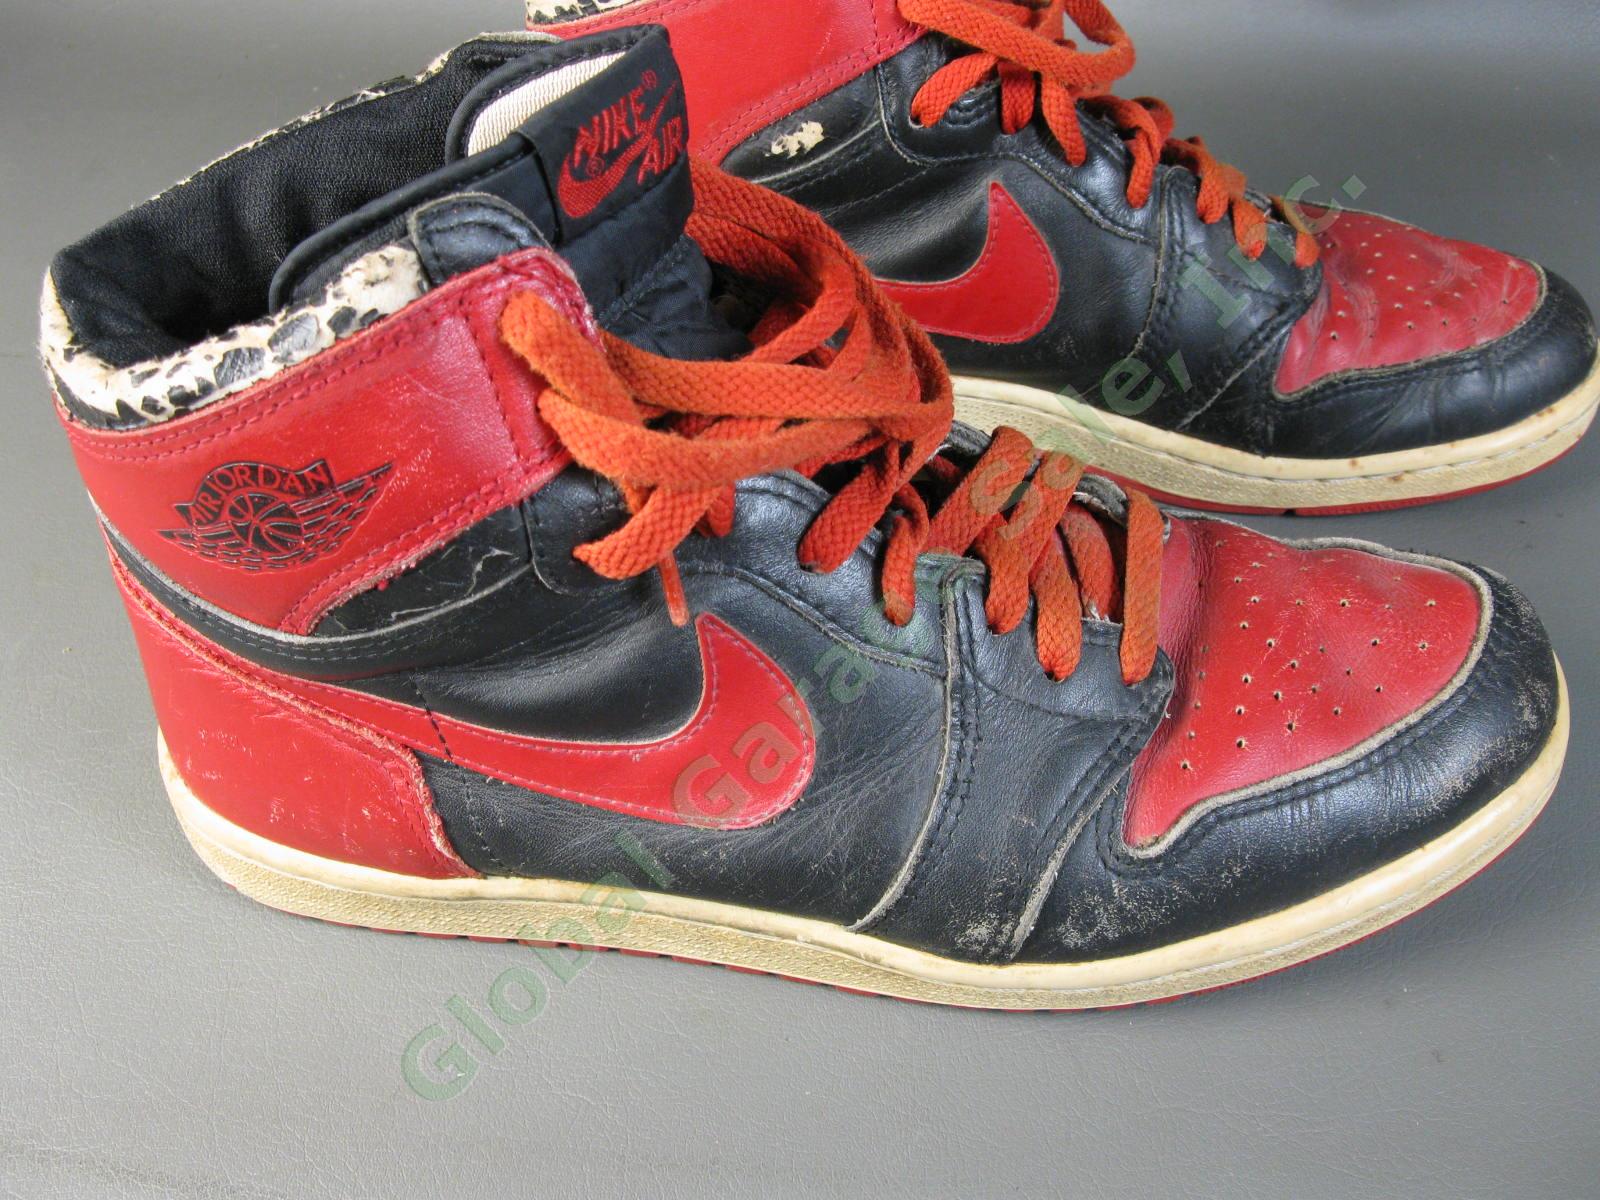 ORIGINAL 1985 Nike Air Jordan 1 Bred Black Red Chicago Bulls BANNED OG MJ AJI NR 12